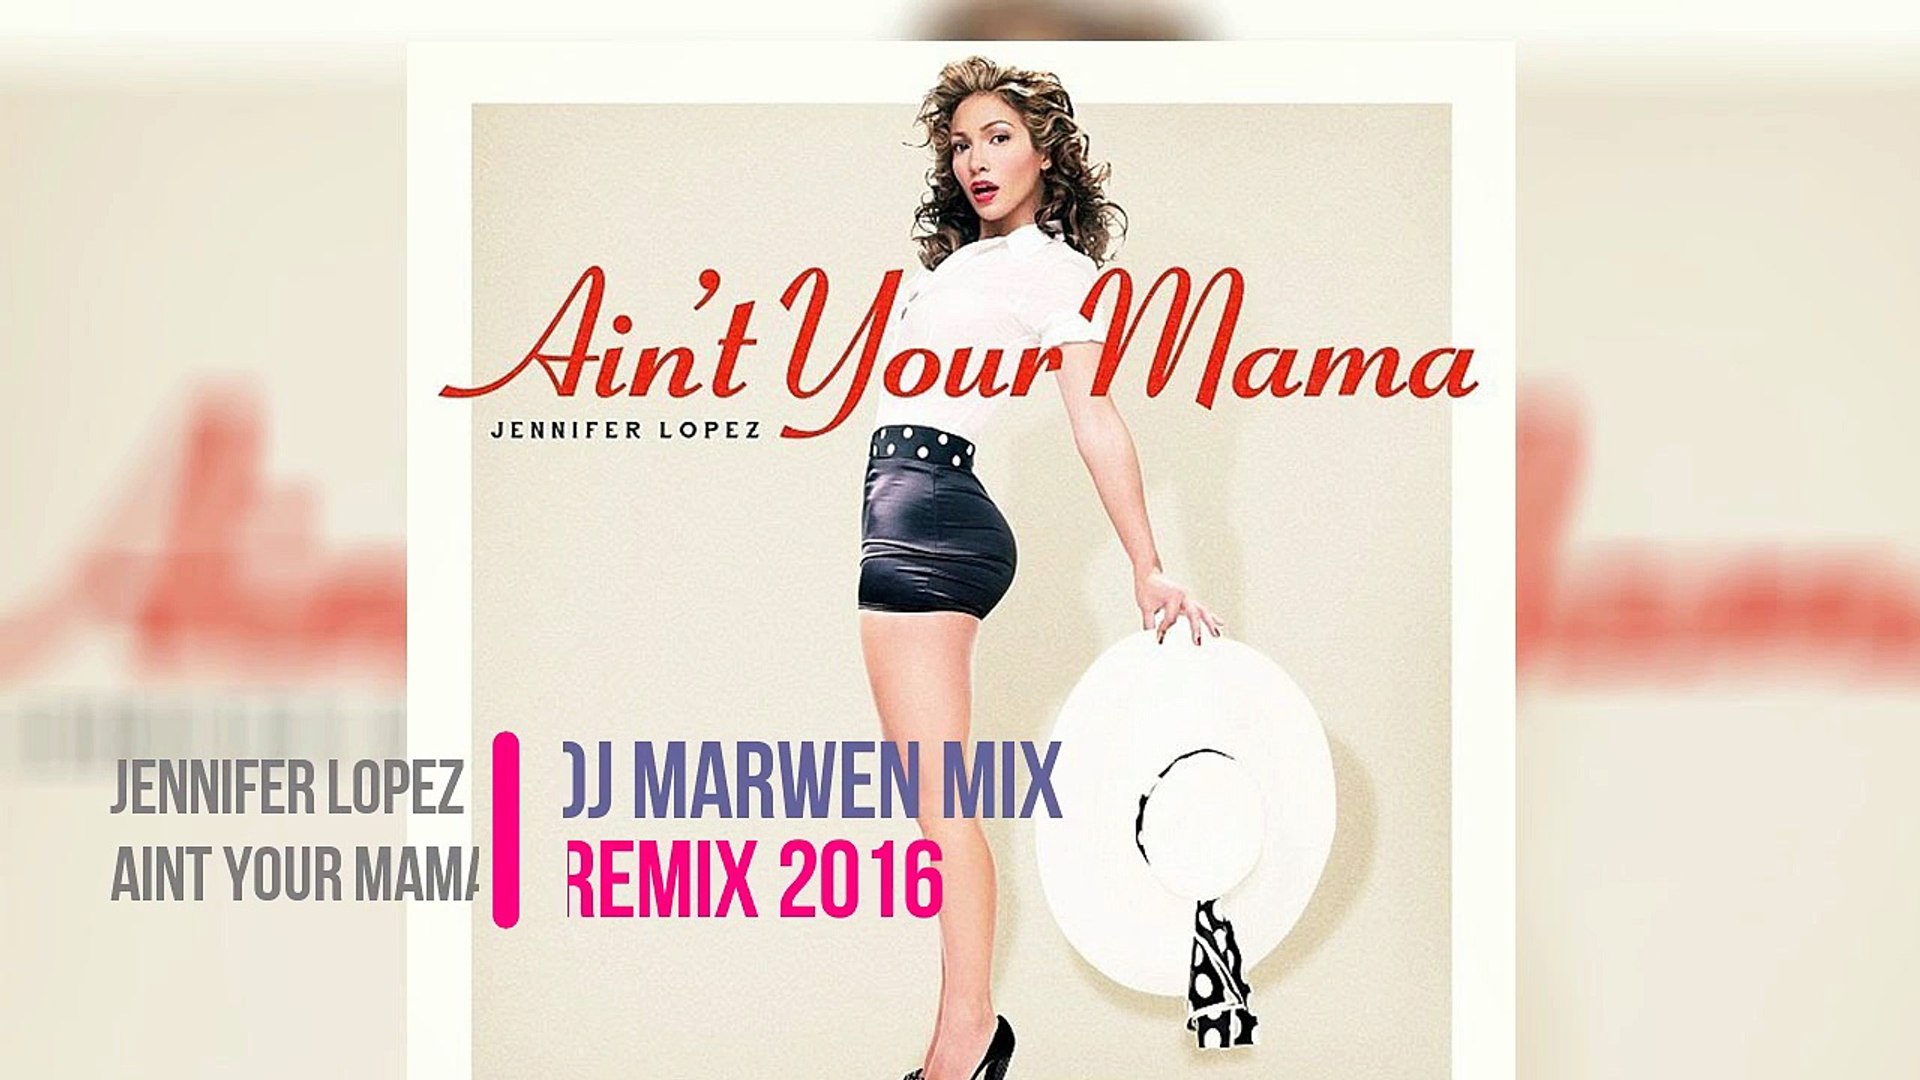 Jennifer Lopez Aint Your Mama (Dj Marwen Mix Remix 2016) Jingle - video  Dailymotion